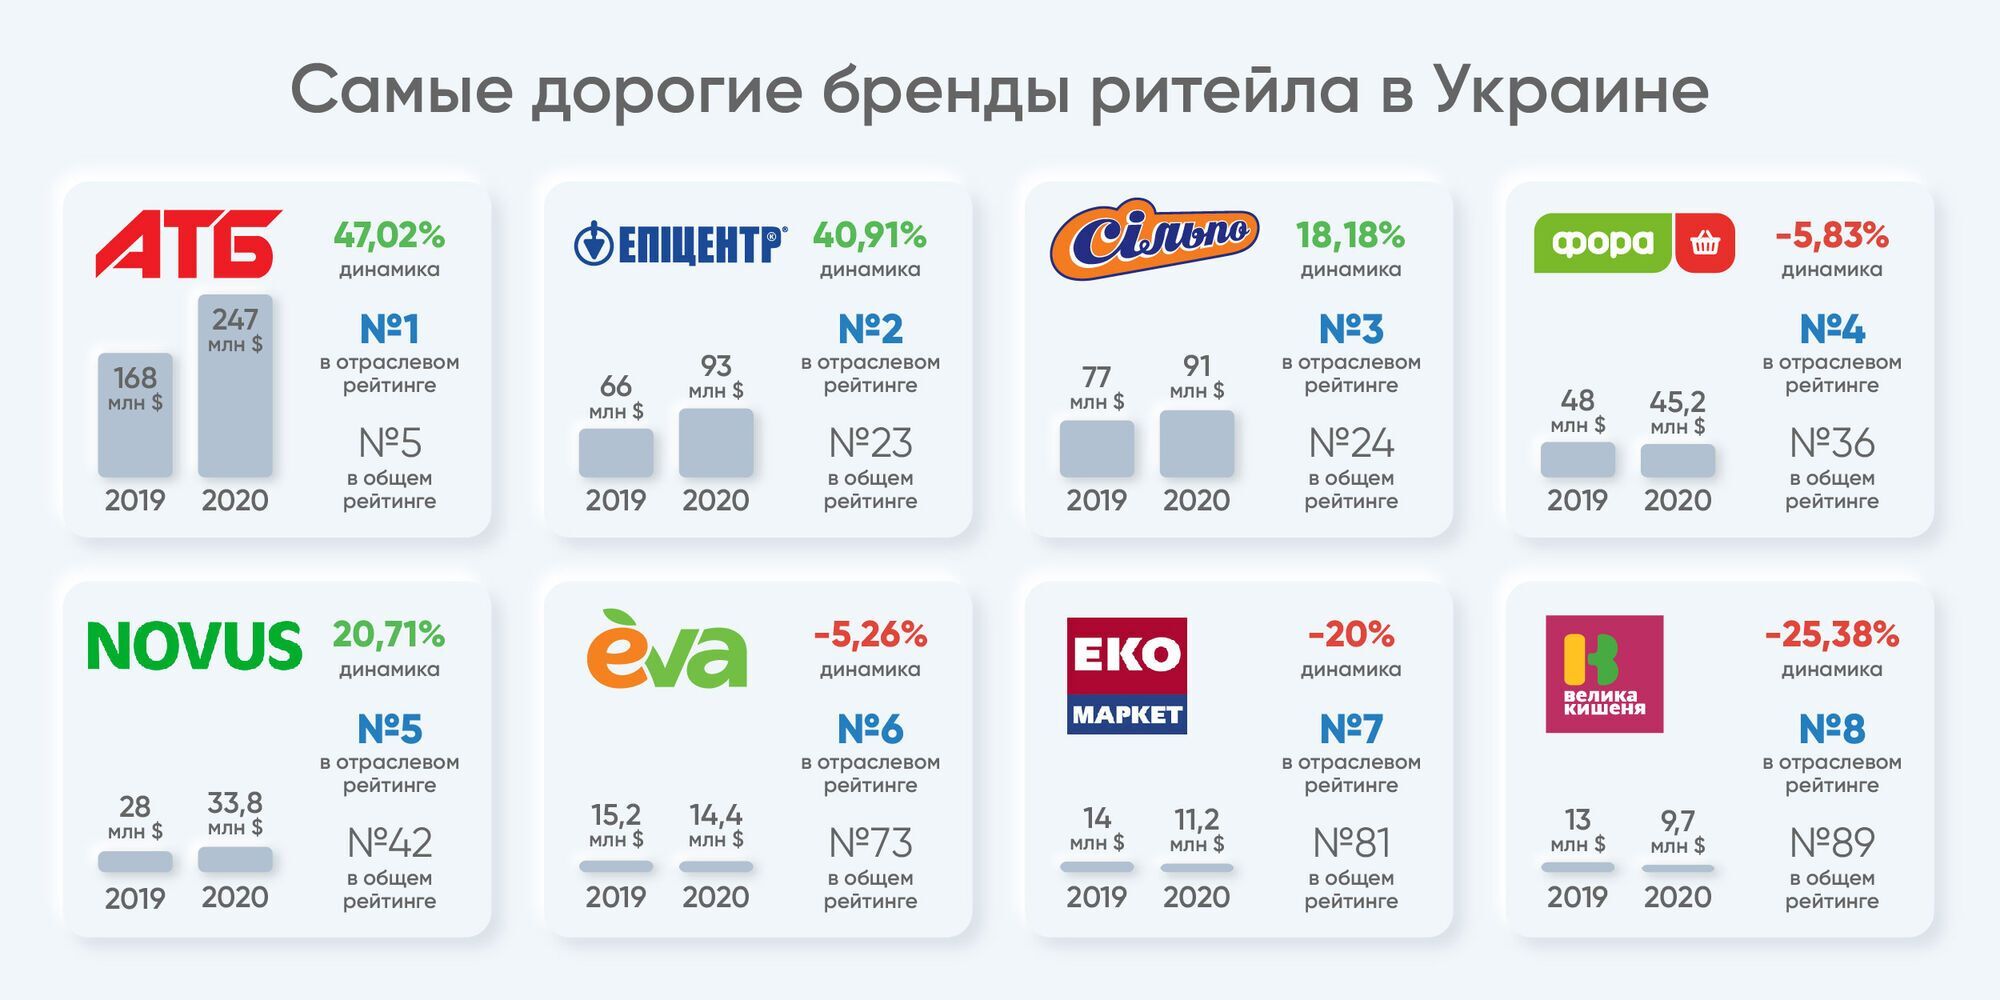 АТБ возглавил рейтинг стоимости брендов среди розничных сетей Украины